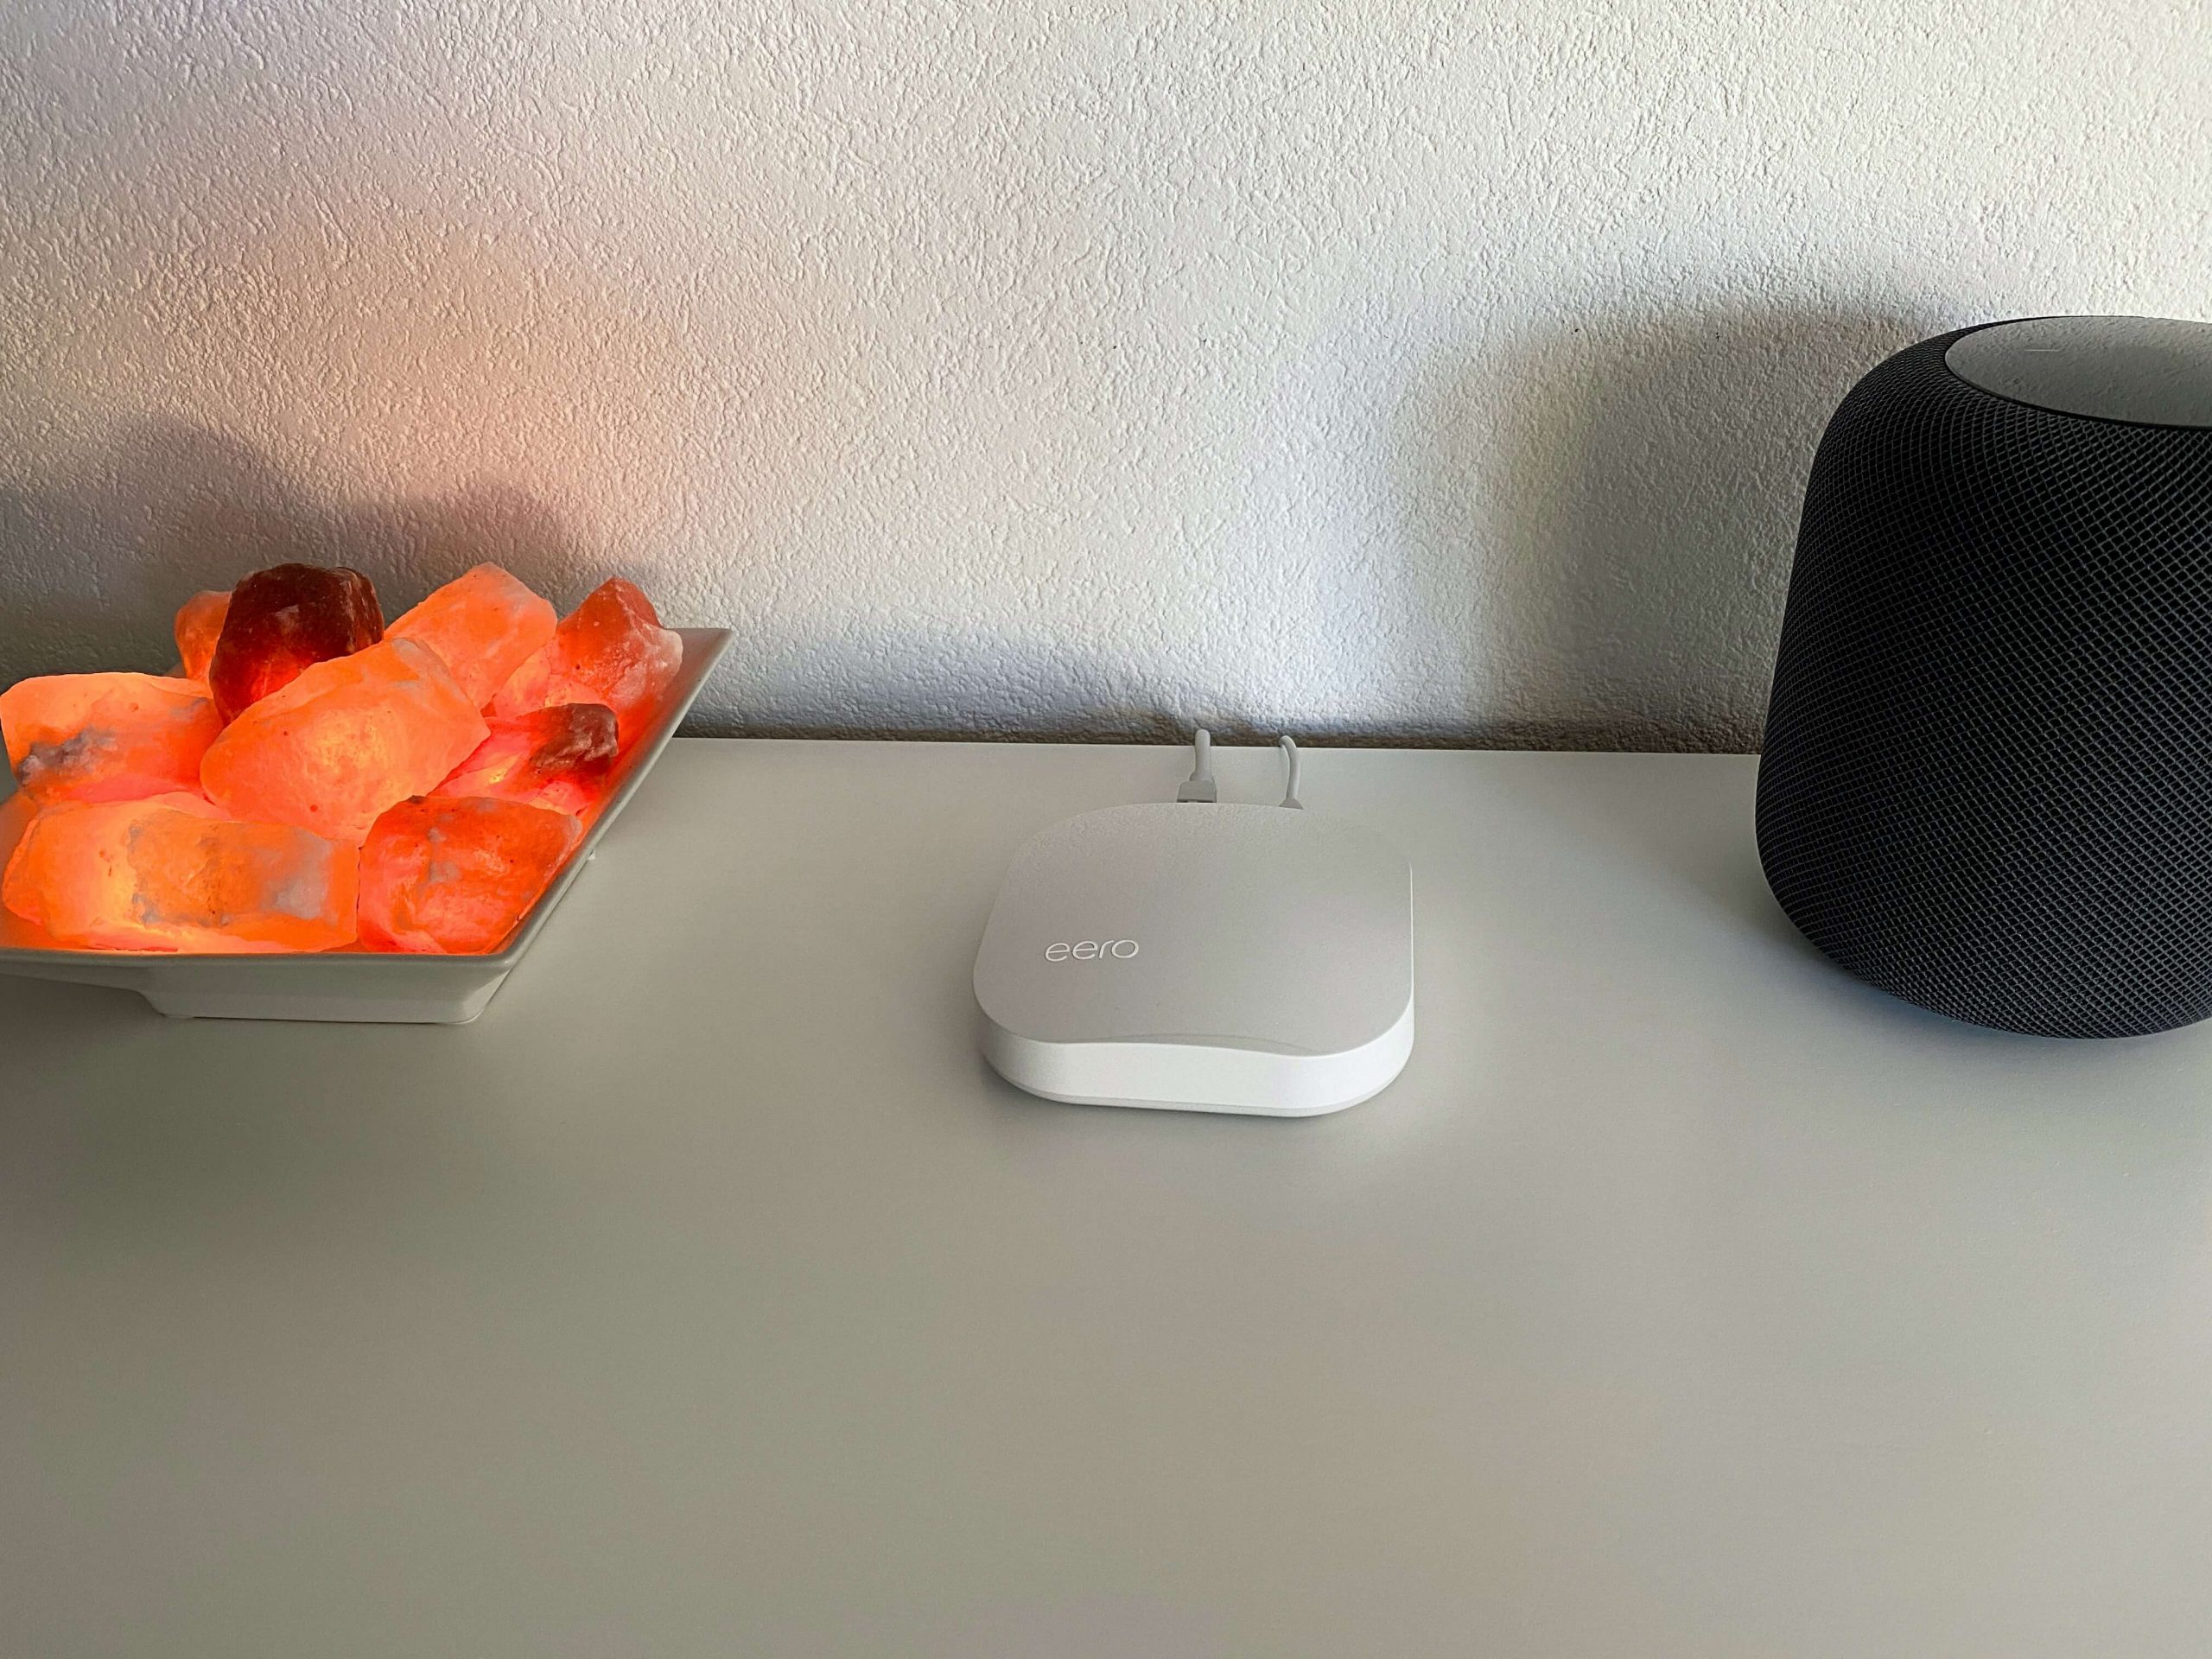 Apple-HomeKit-Router-von-eero-besondere-Sicherheit-im-SmartHome6-scaled Apple HomeKit Router von eero - maximale Sicherheit im Apple HomeKit-Zuhause